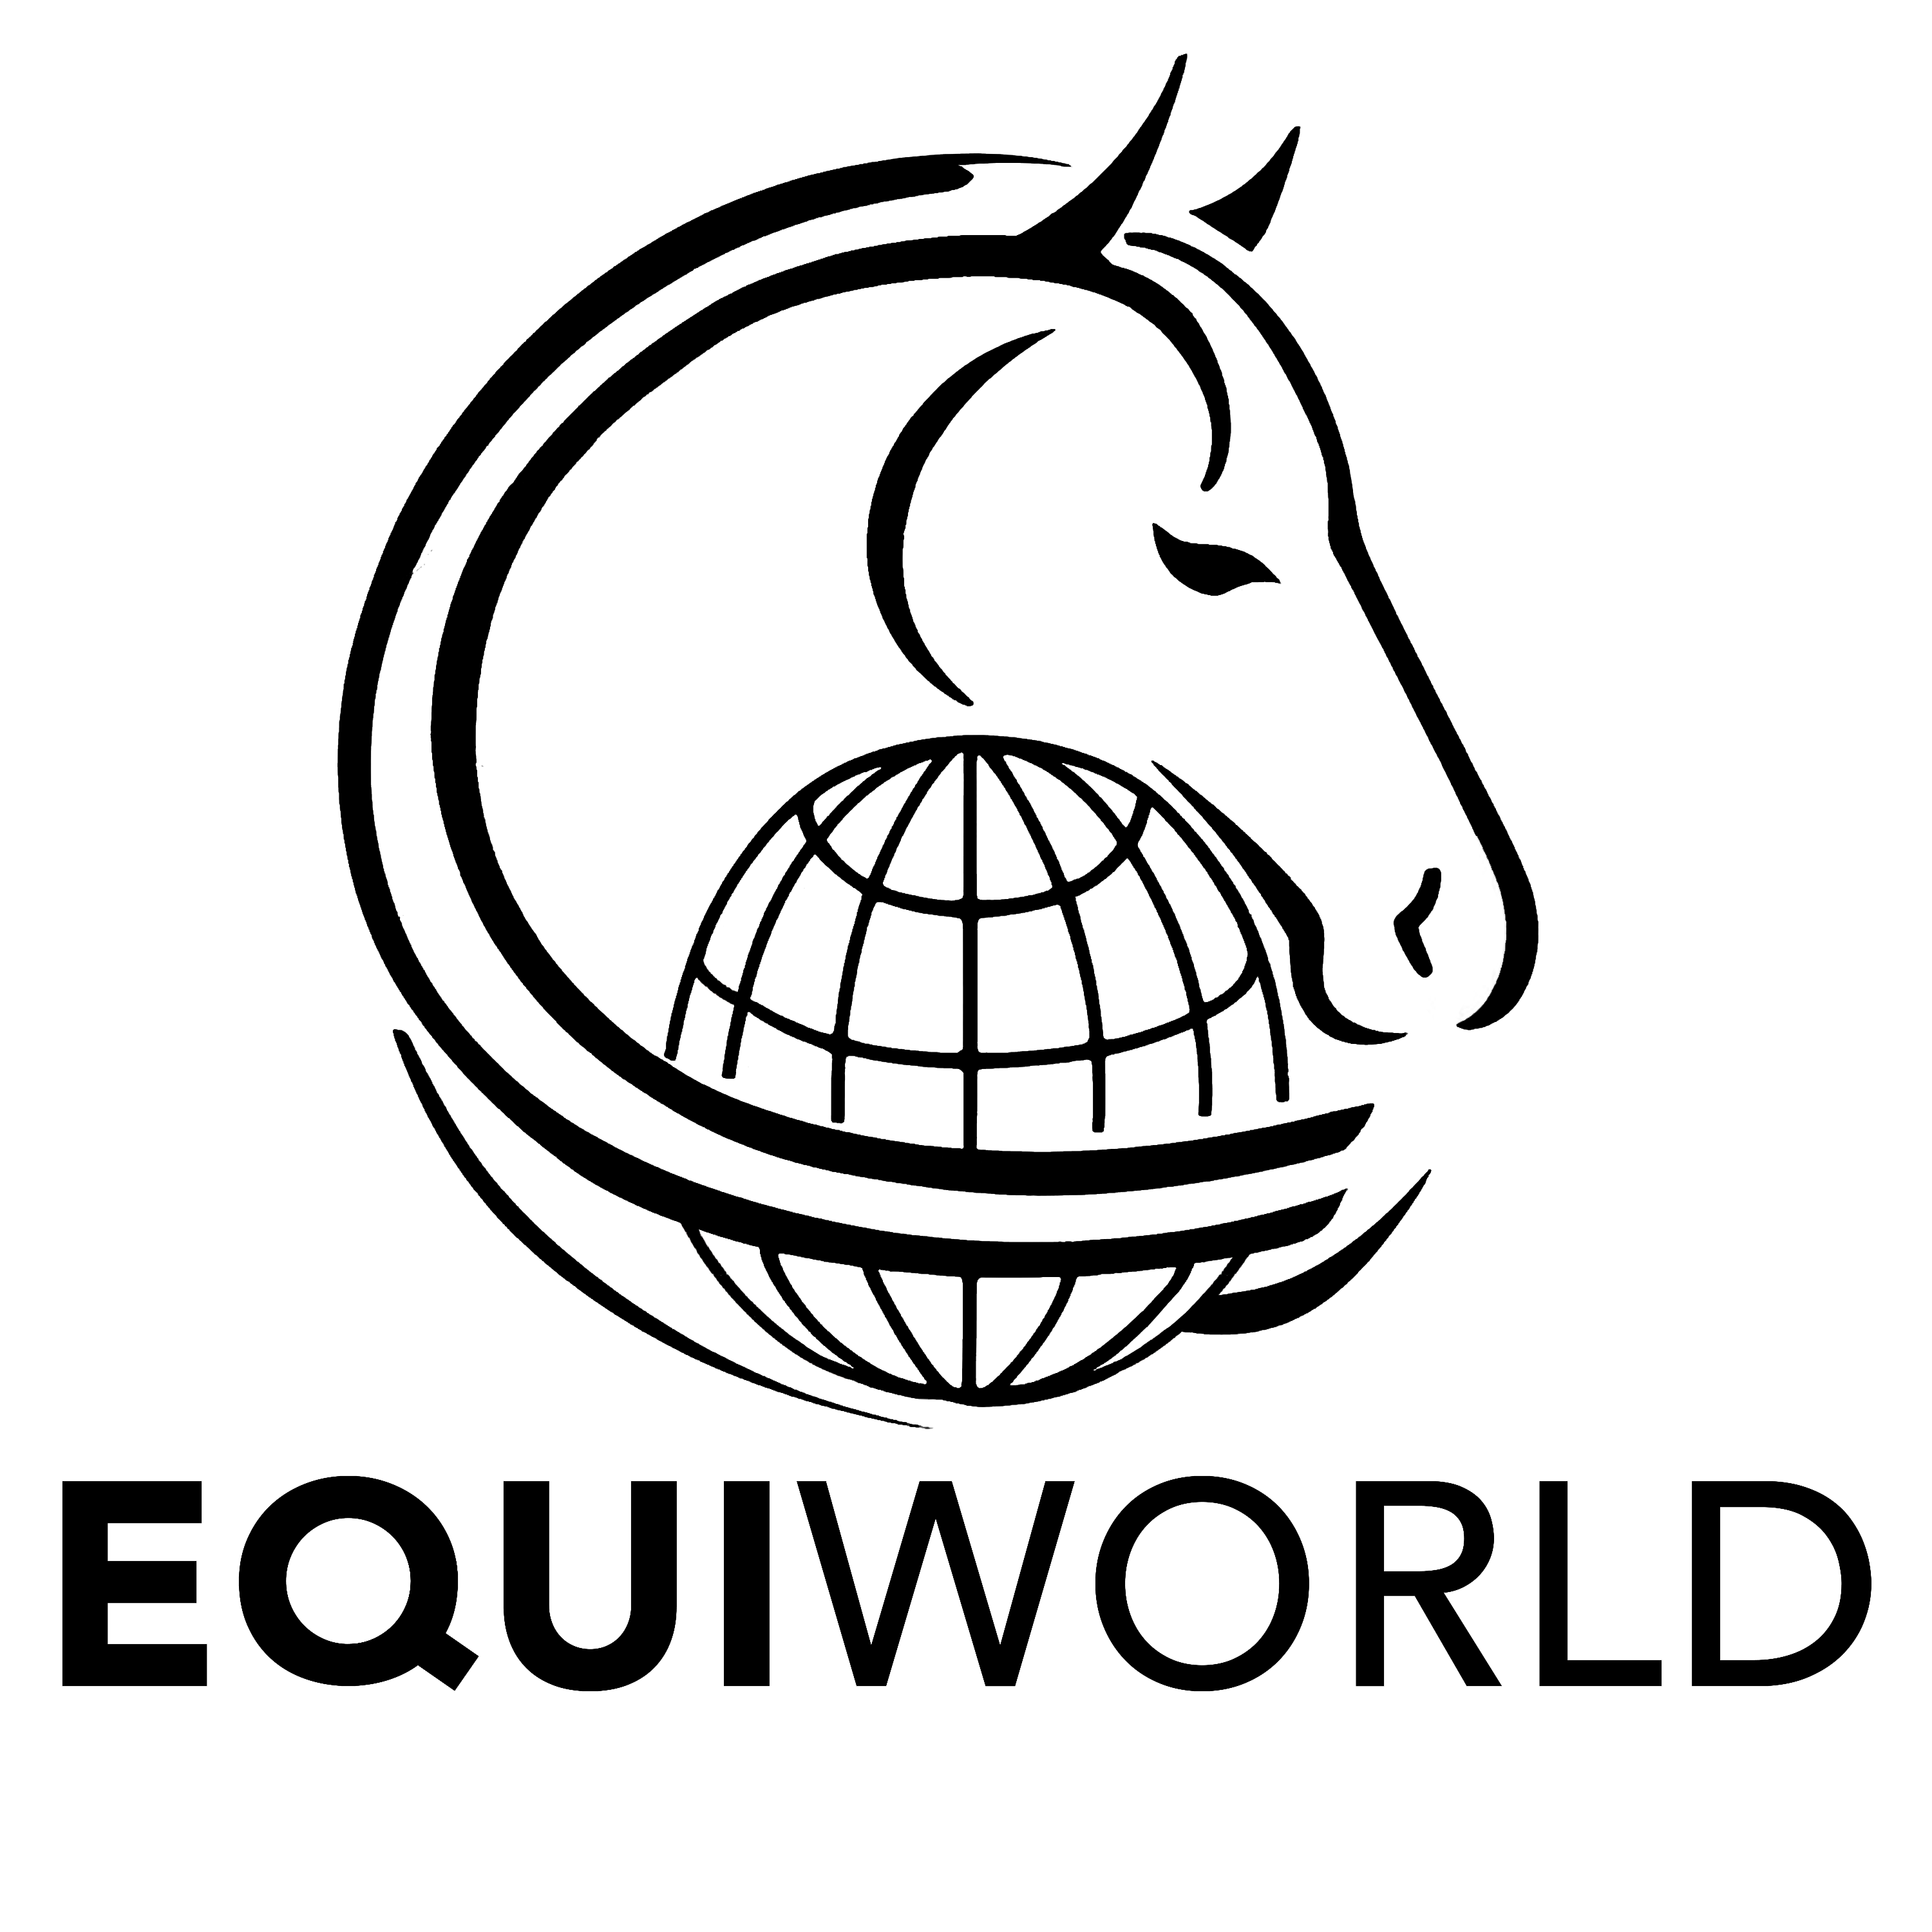 www.equiworld.cz